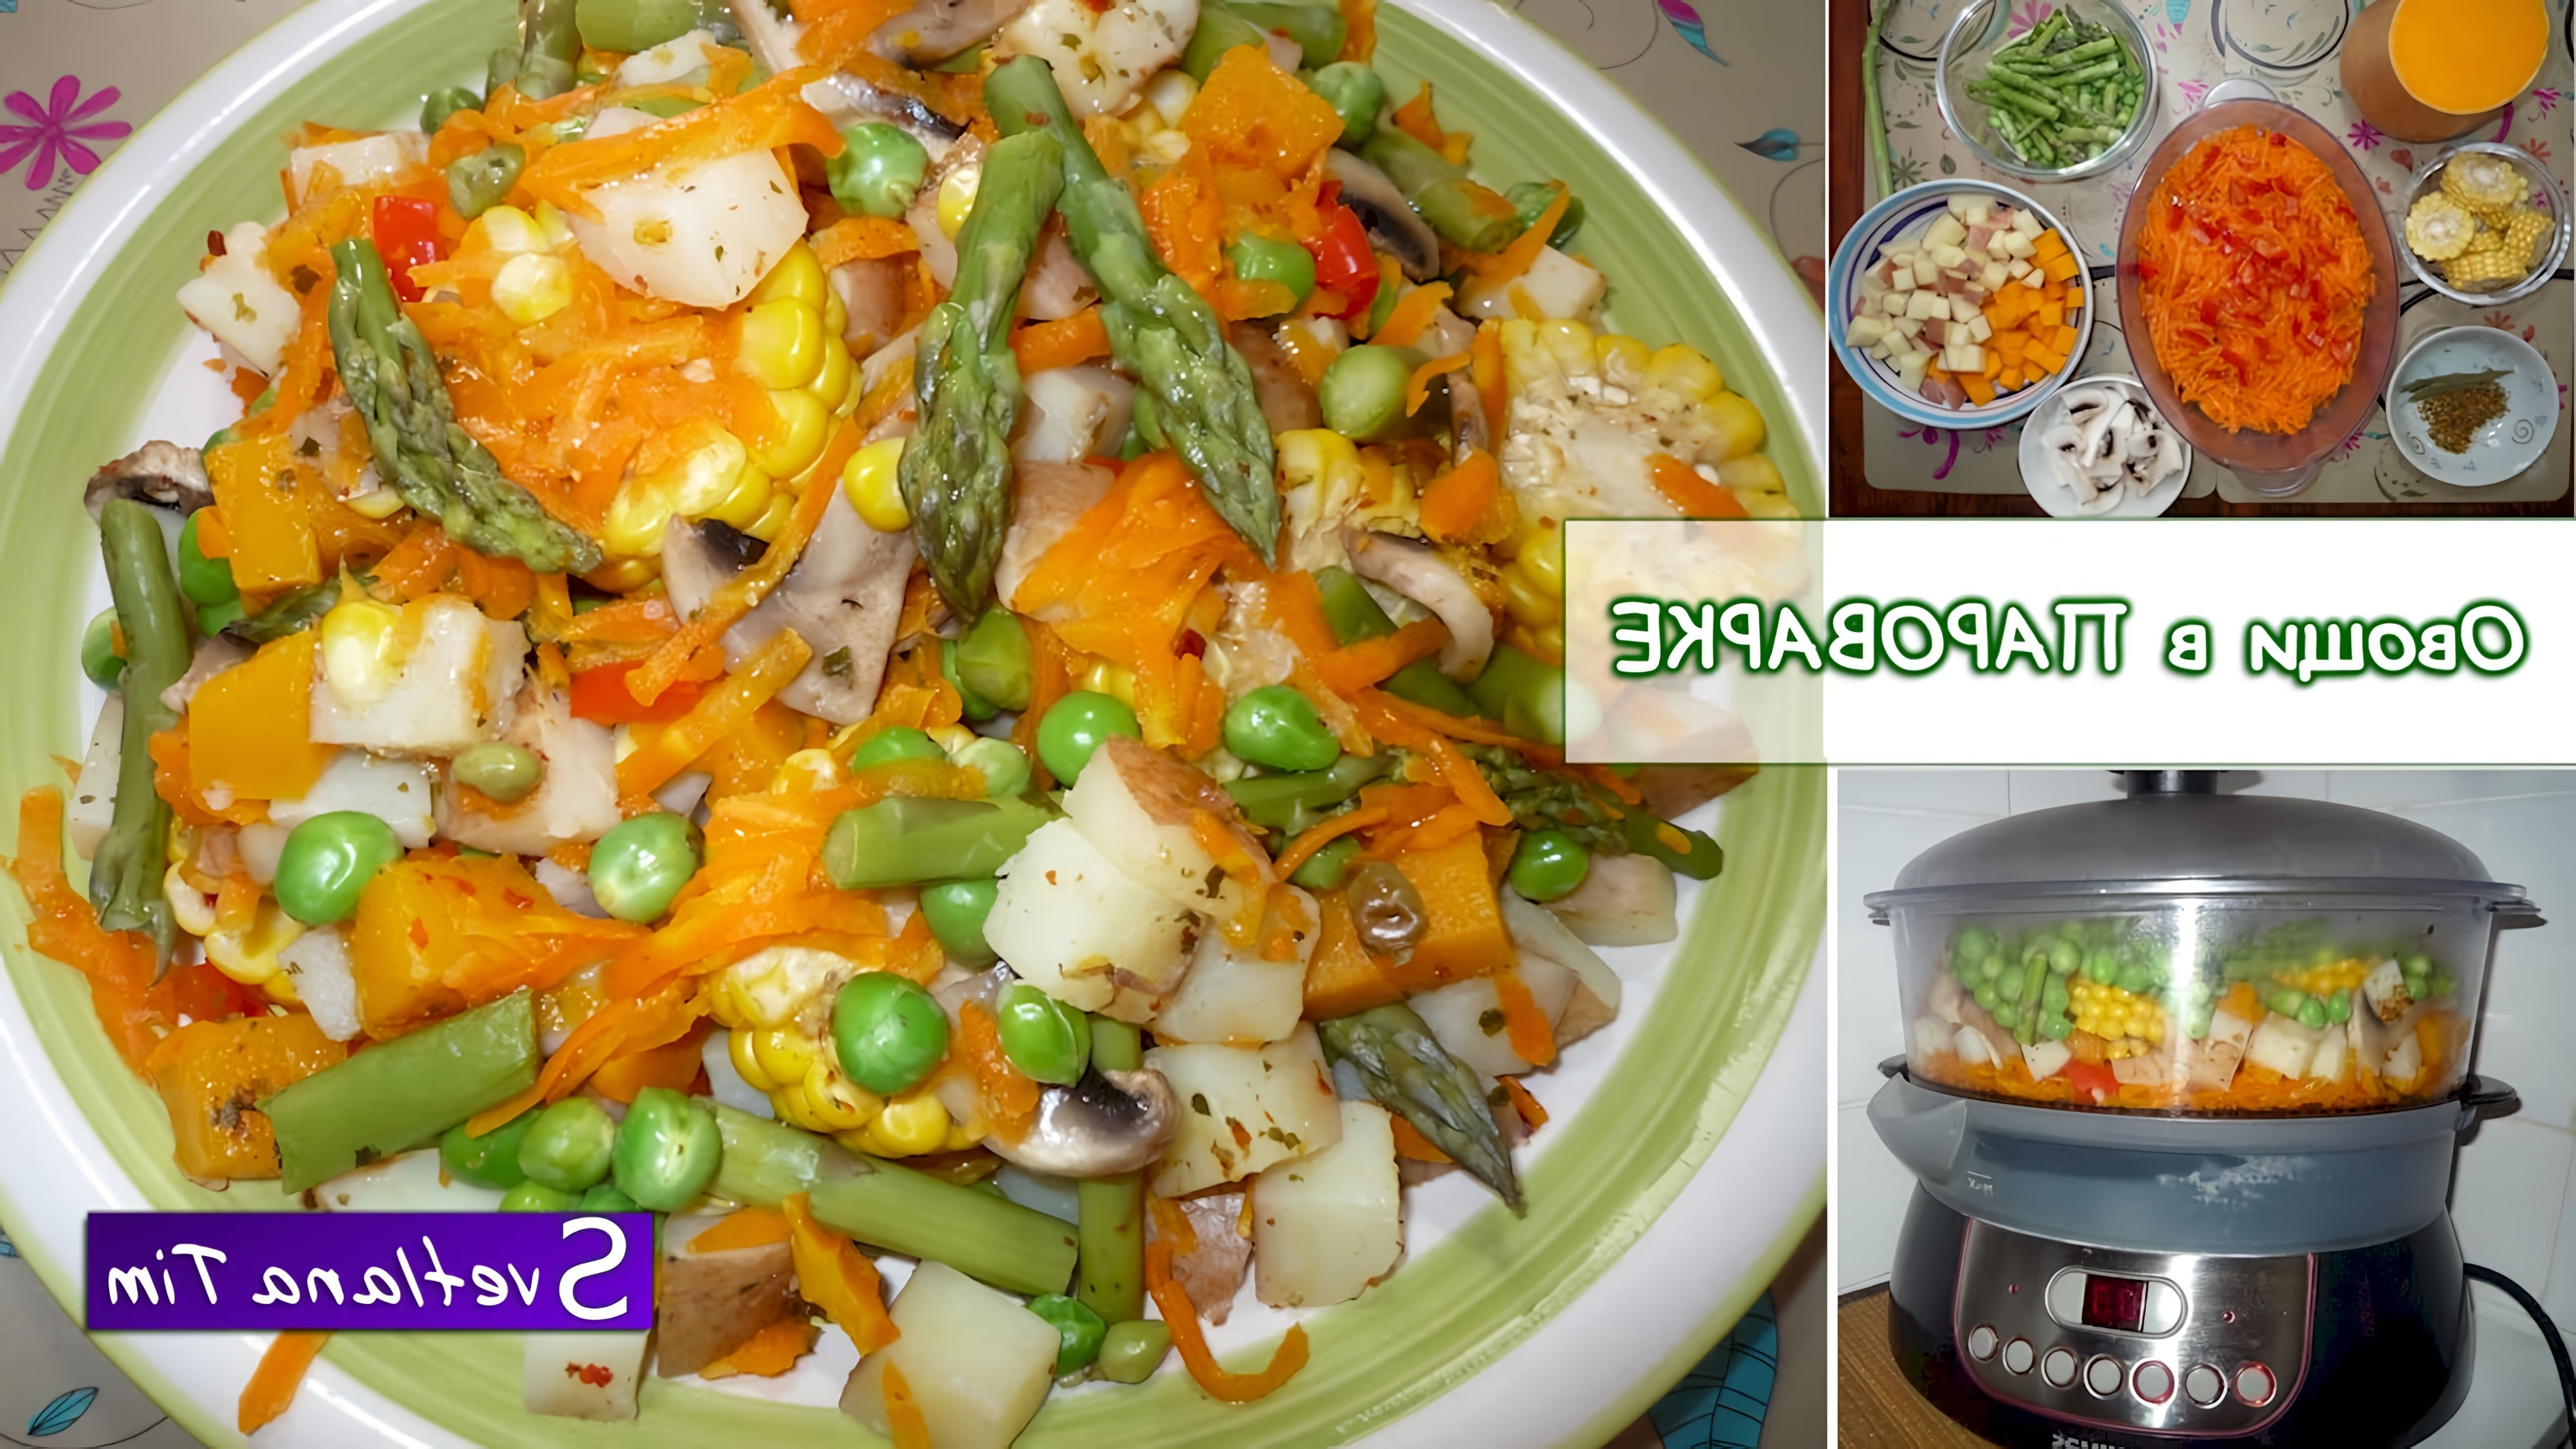 В этом видео демонстрируется процесс приготовления овощей на пару в пароварке